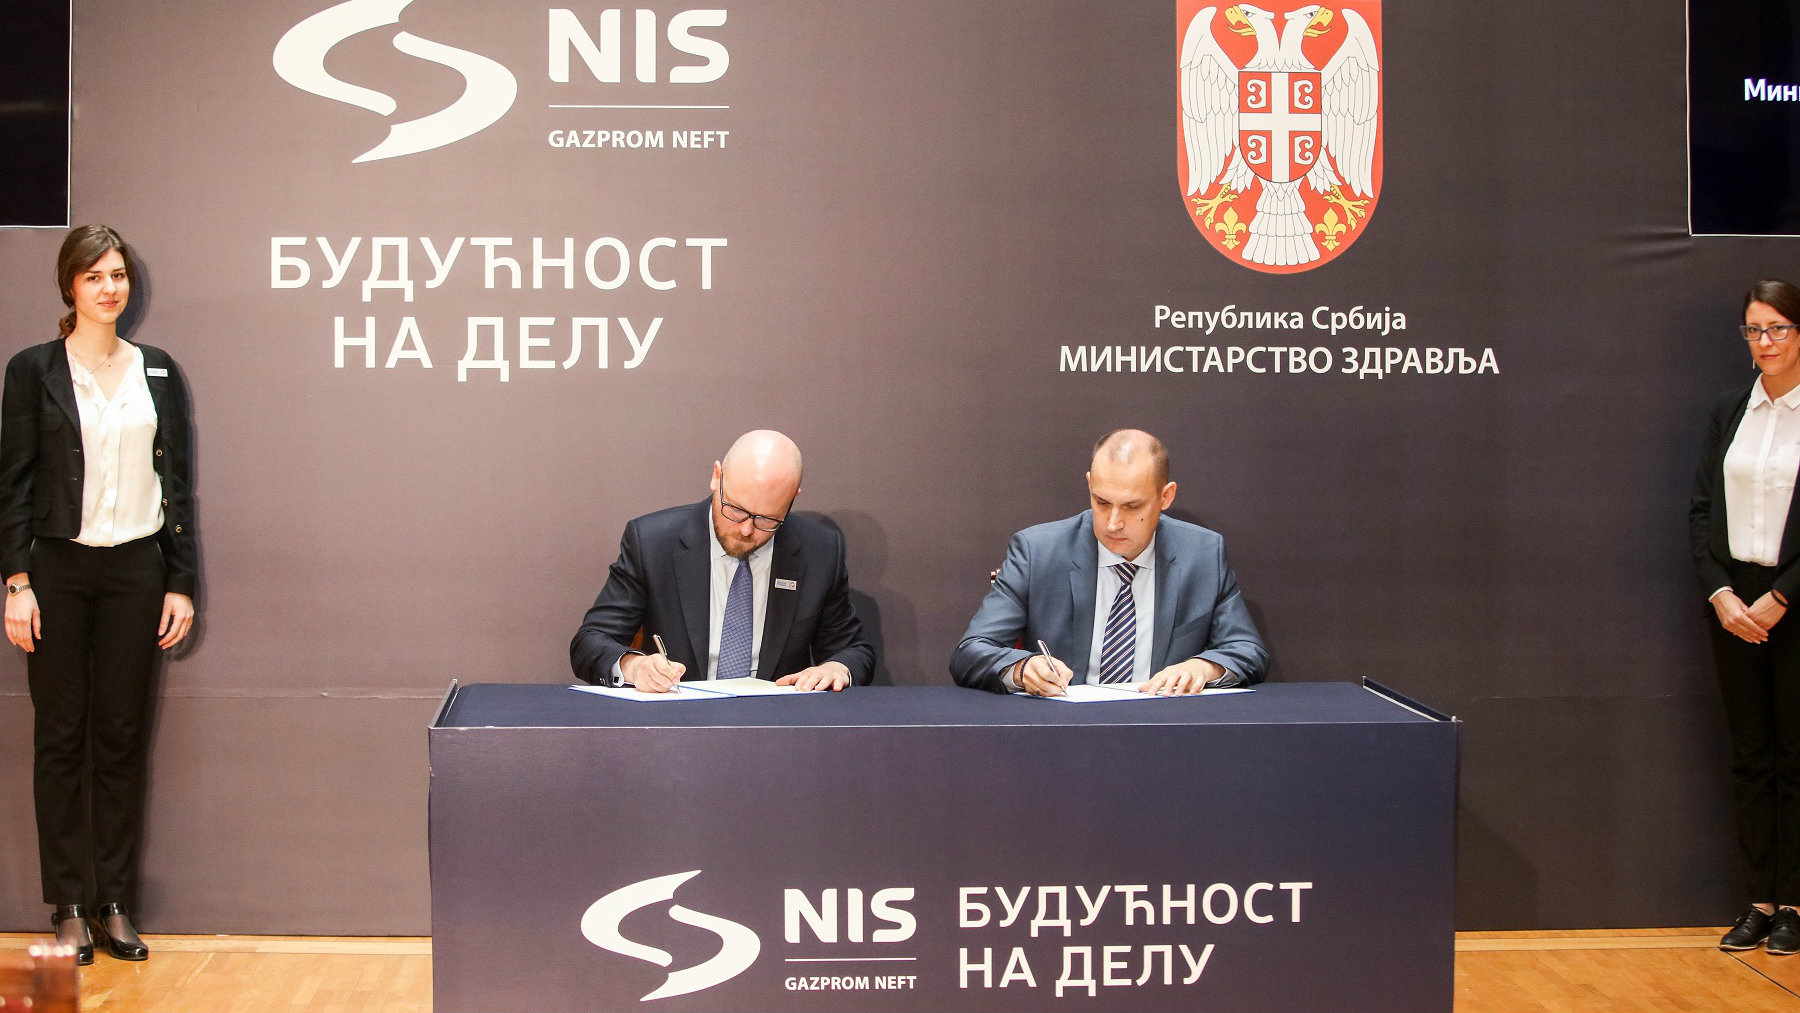 Kompanija NIS ulaže oko milion evra u zdravstvene institucije širom Srbije 1